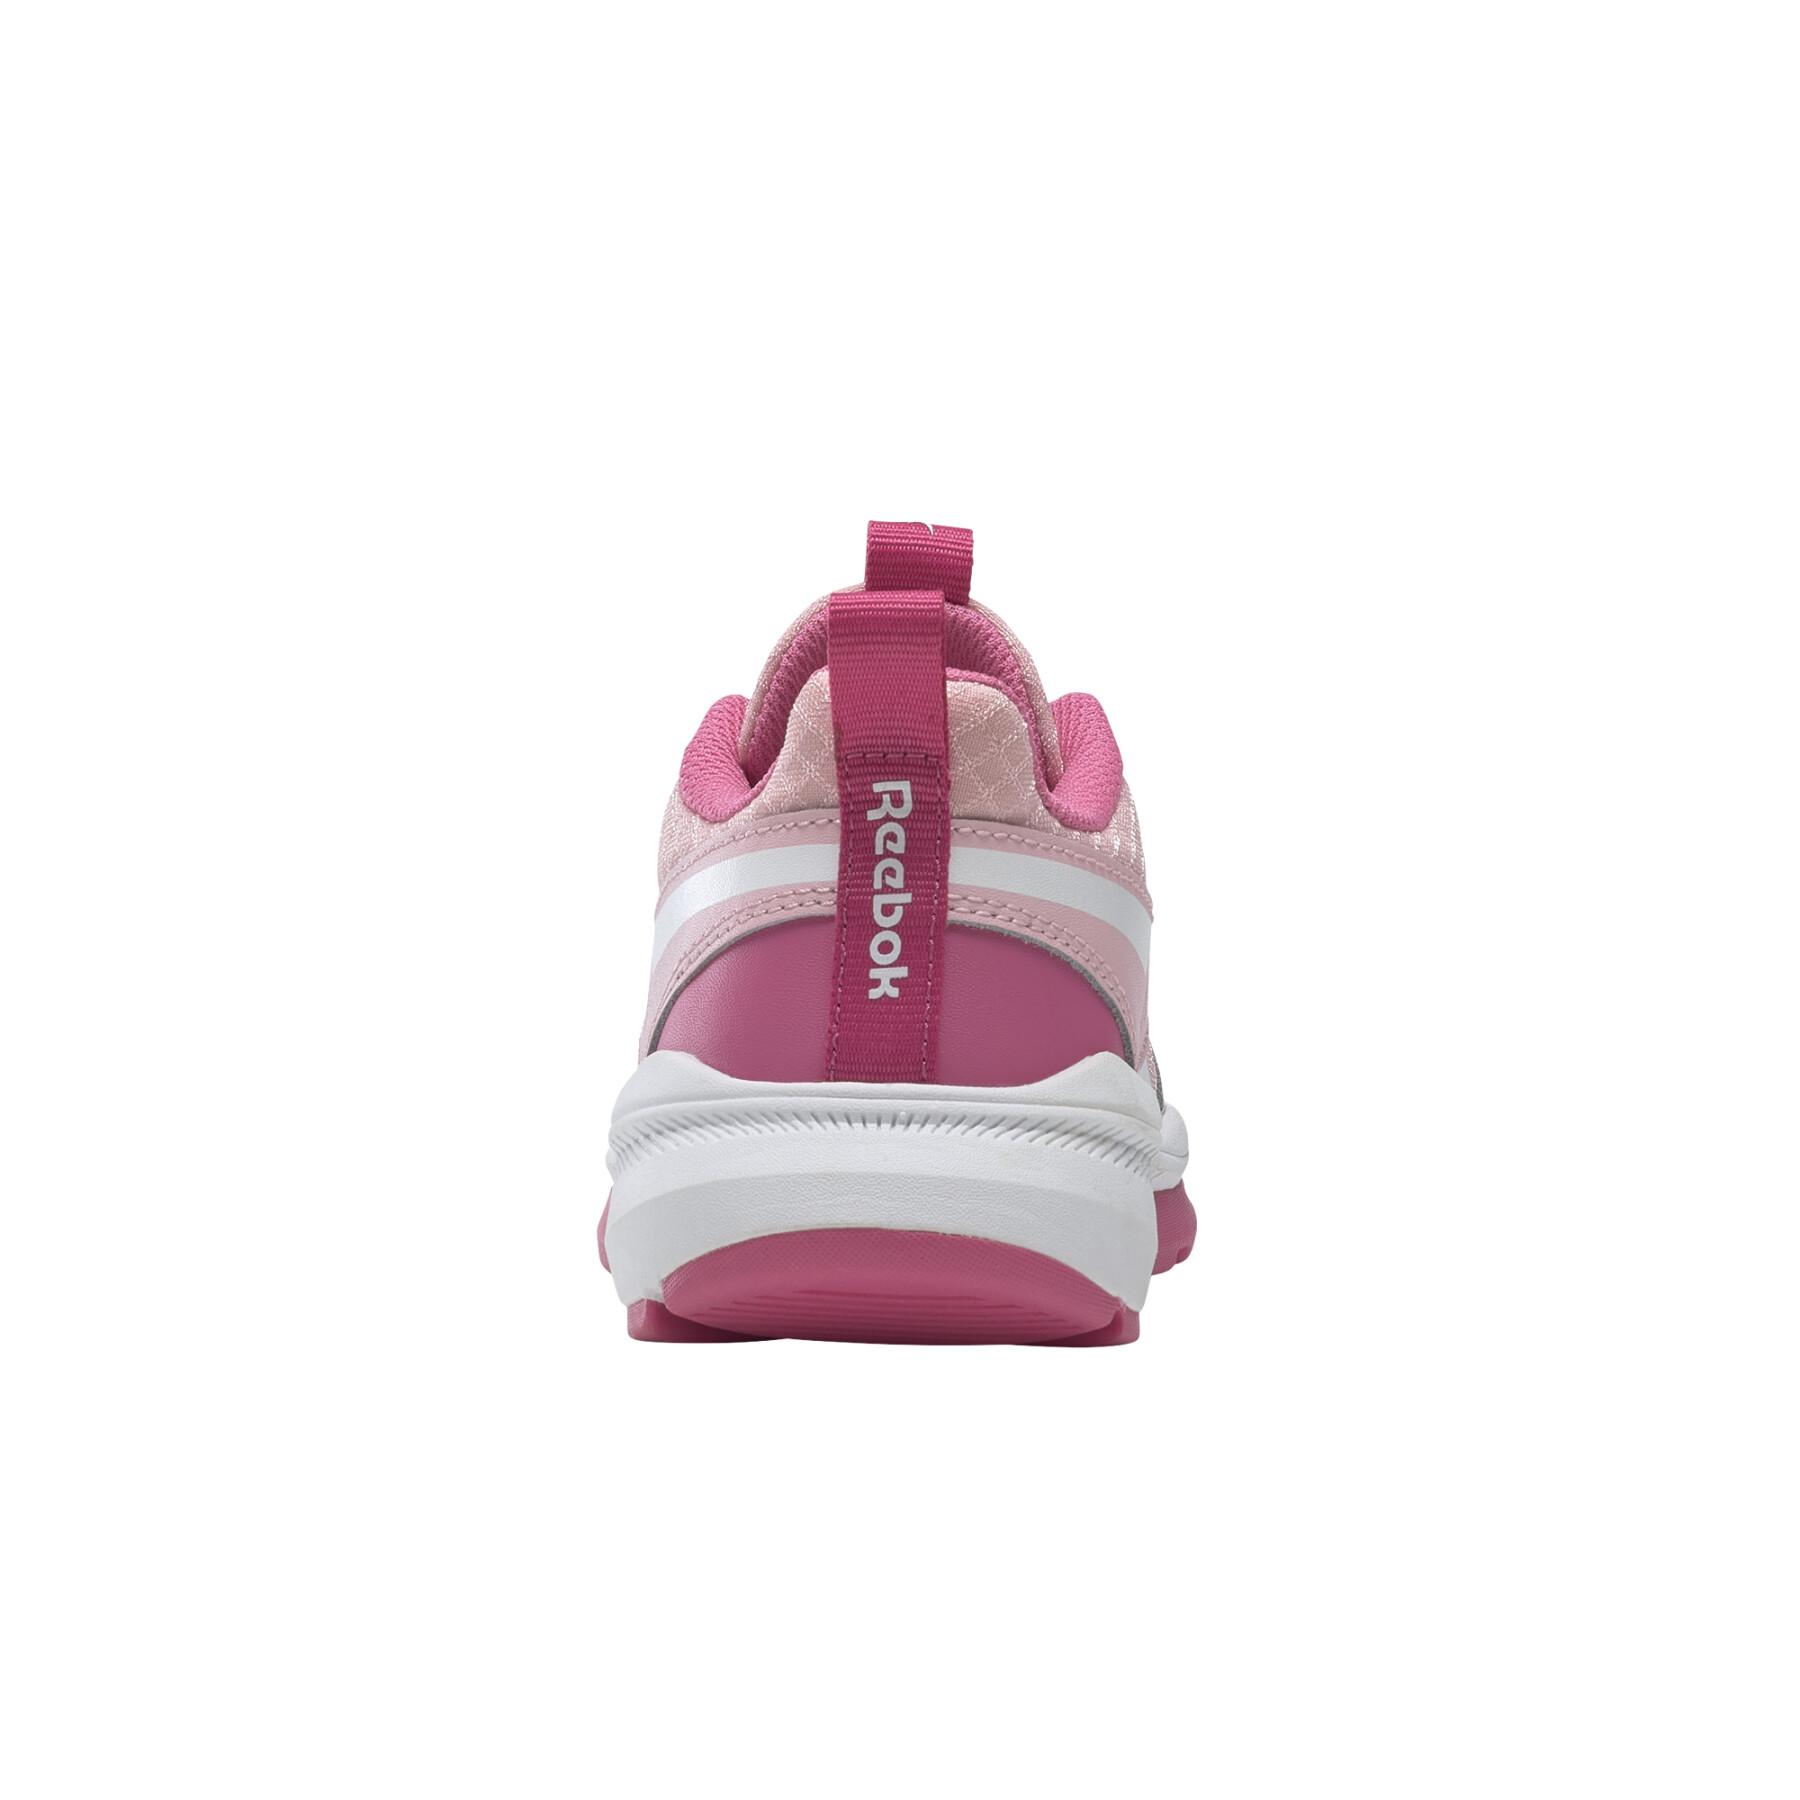 Skor för flickor Reebok XT Sprinter 2